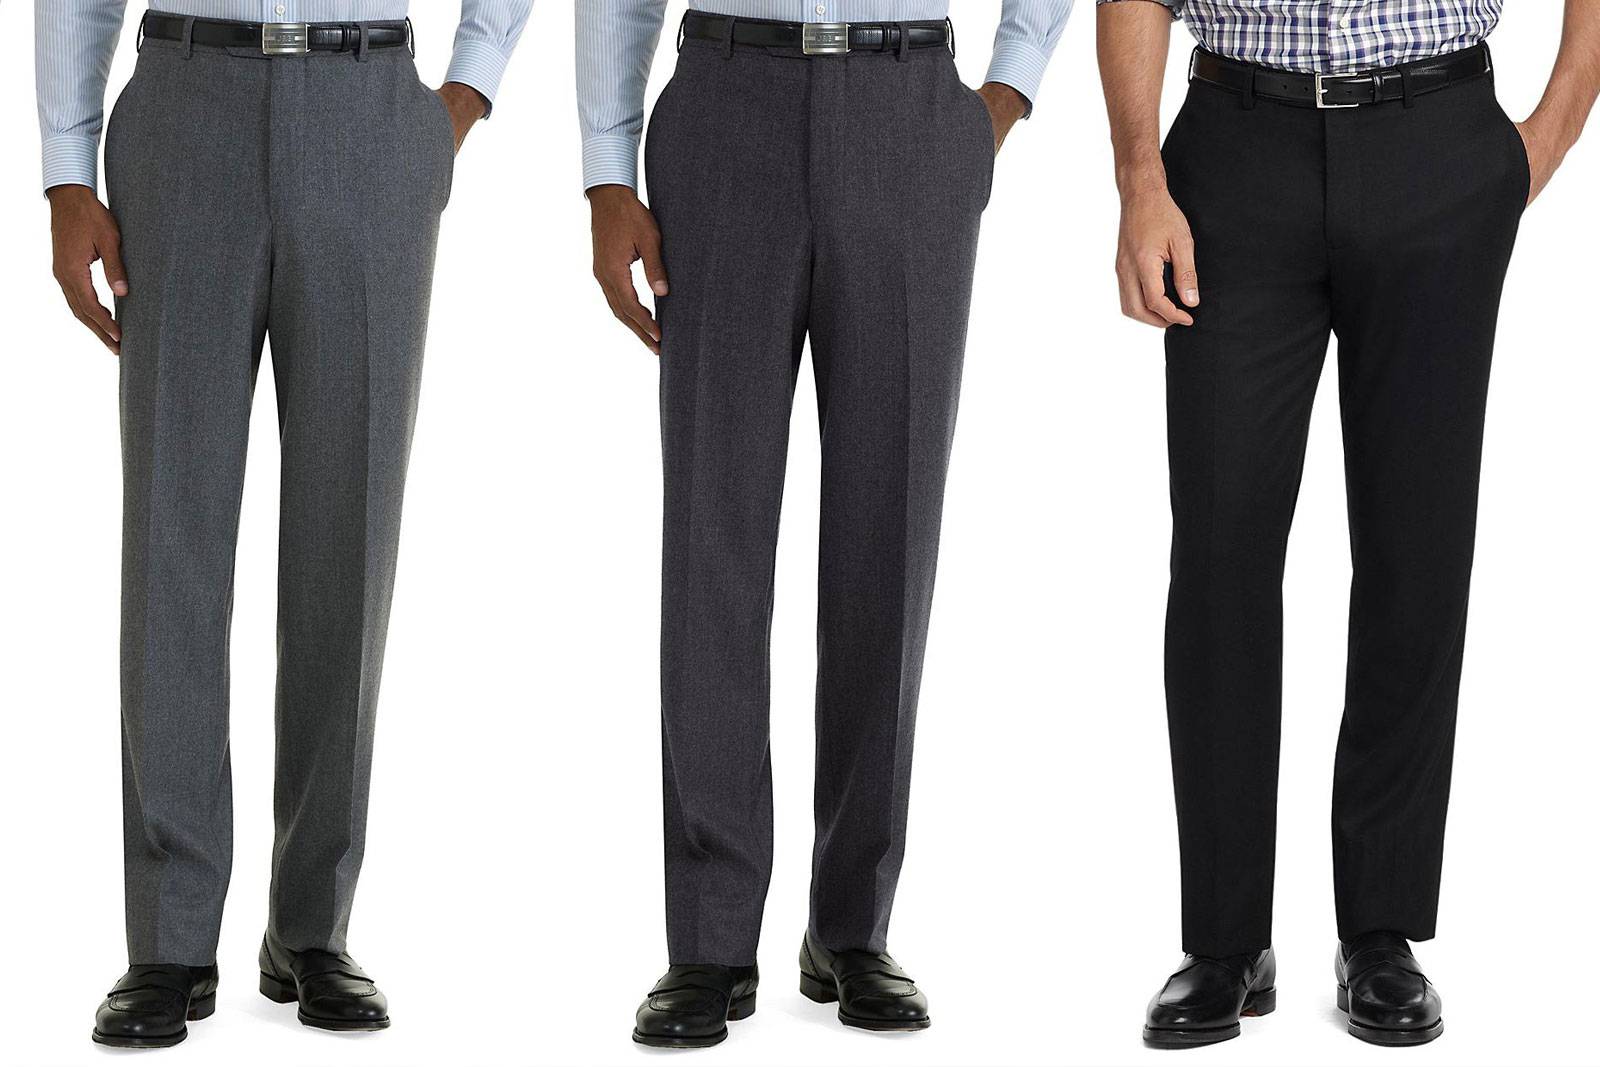 ﻿как должны сидеть брюки - практические советы мужчине
﻿как должны сидеть брюки - практические советы мужчине